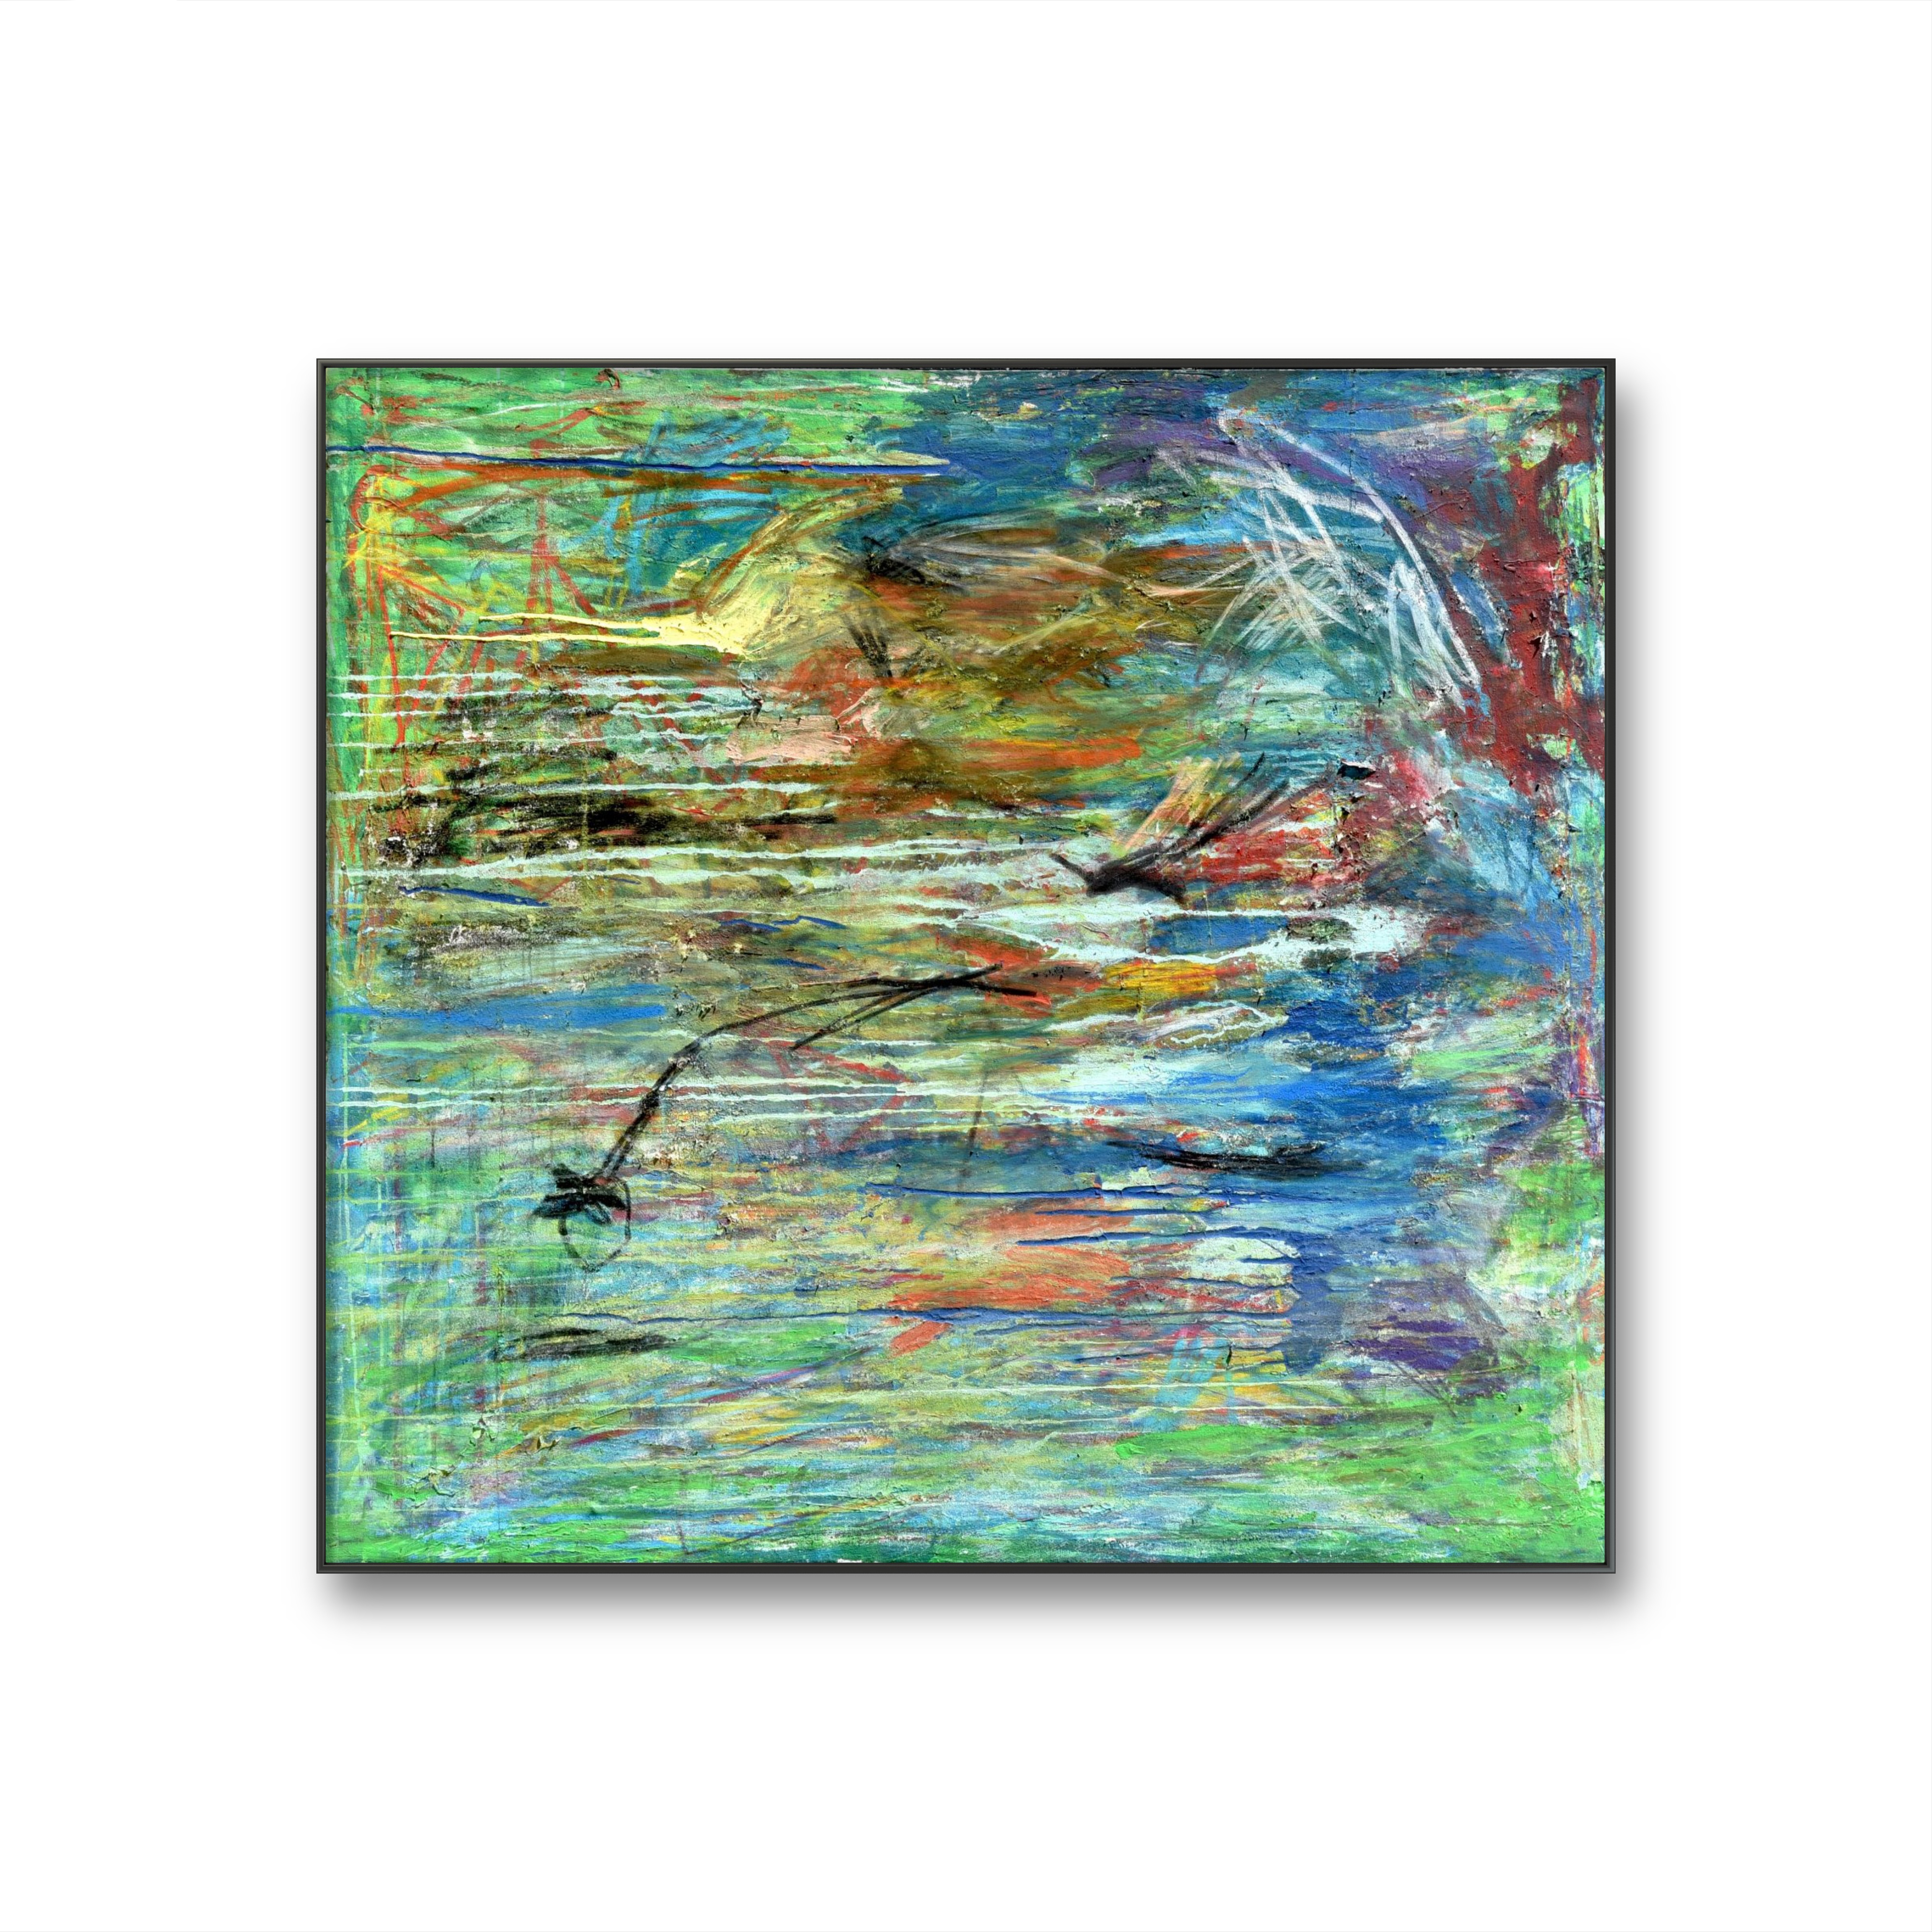 Girino e Libelinha, 23
Acrílico, pastel de óleo, carvão e spray sobre tela
120x120 cm